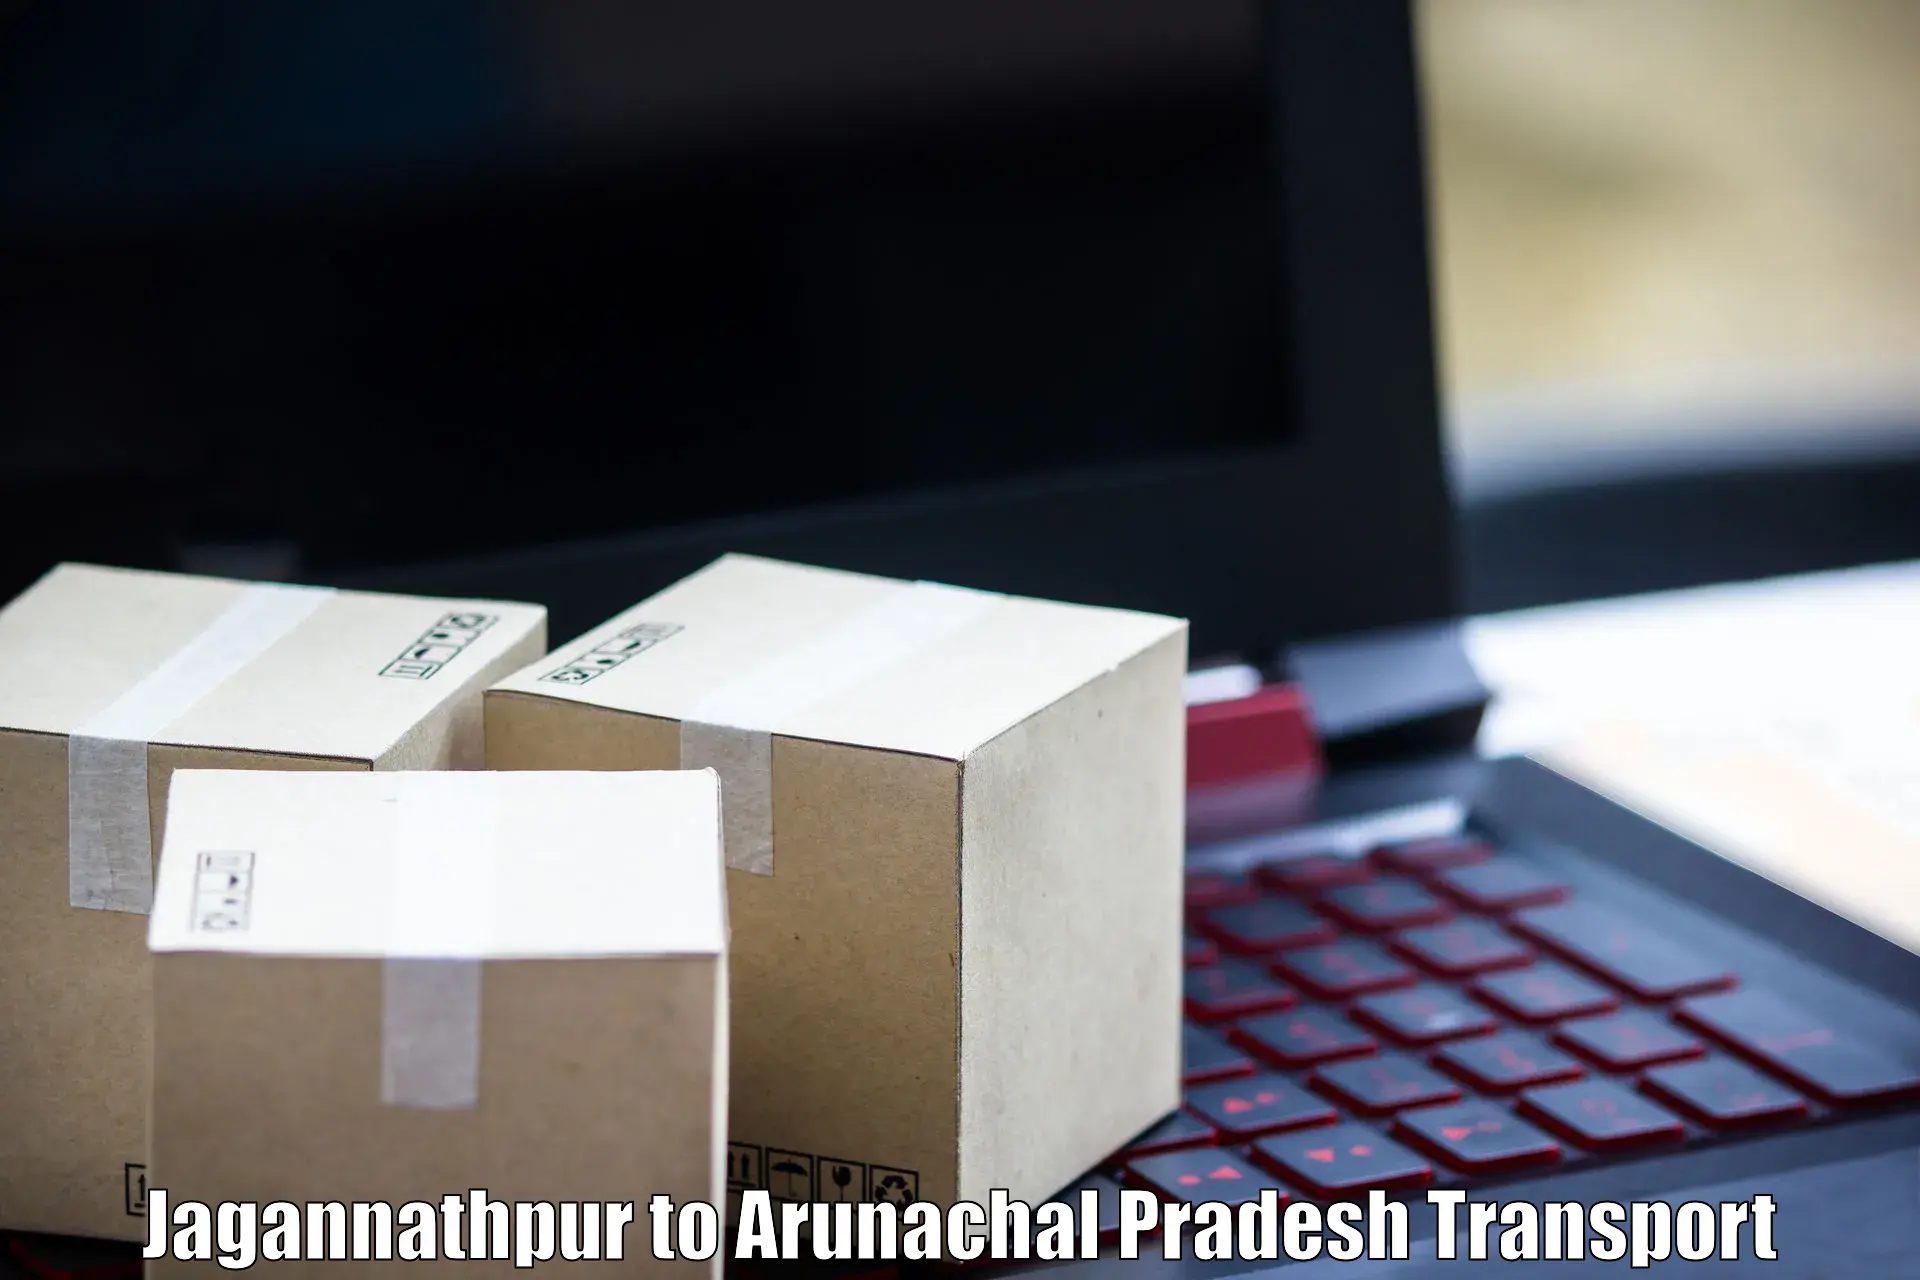 Package delivery services in Jagannathpur to Arunachal Pradesh